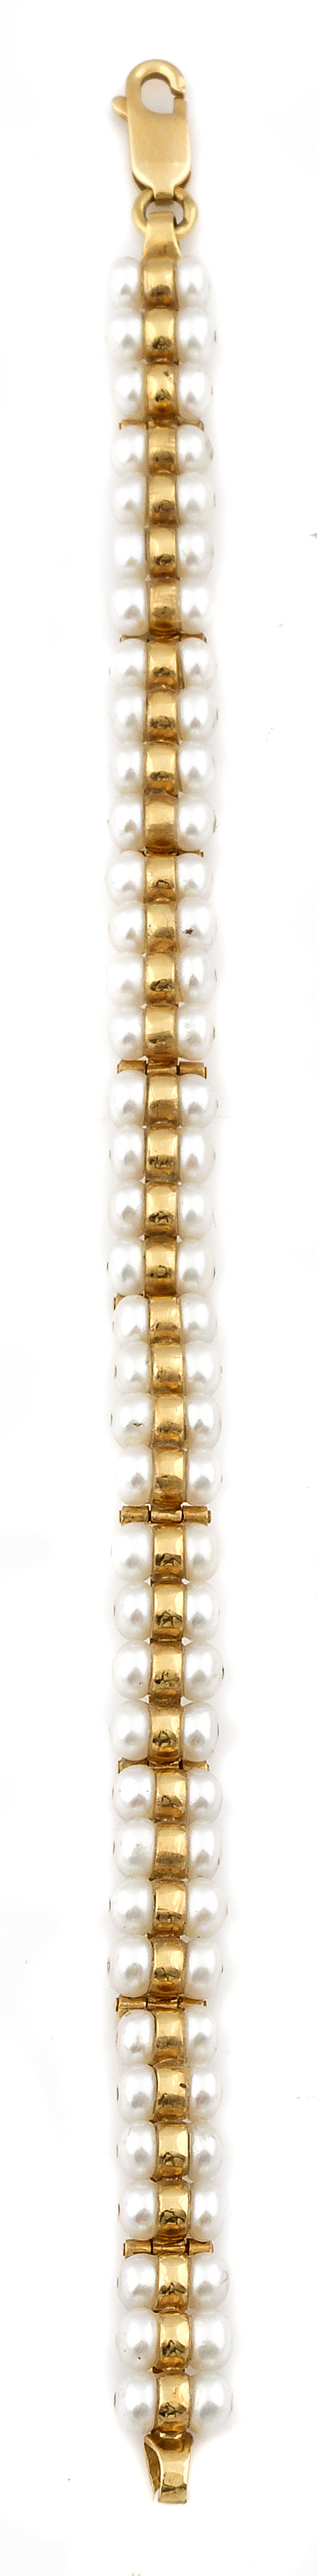 Pulsera con doble fila de perlas entre aros de oro